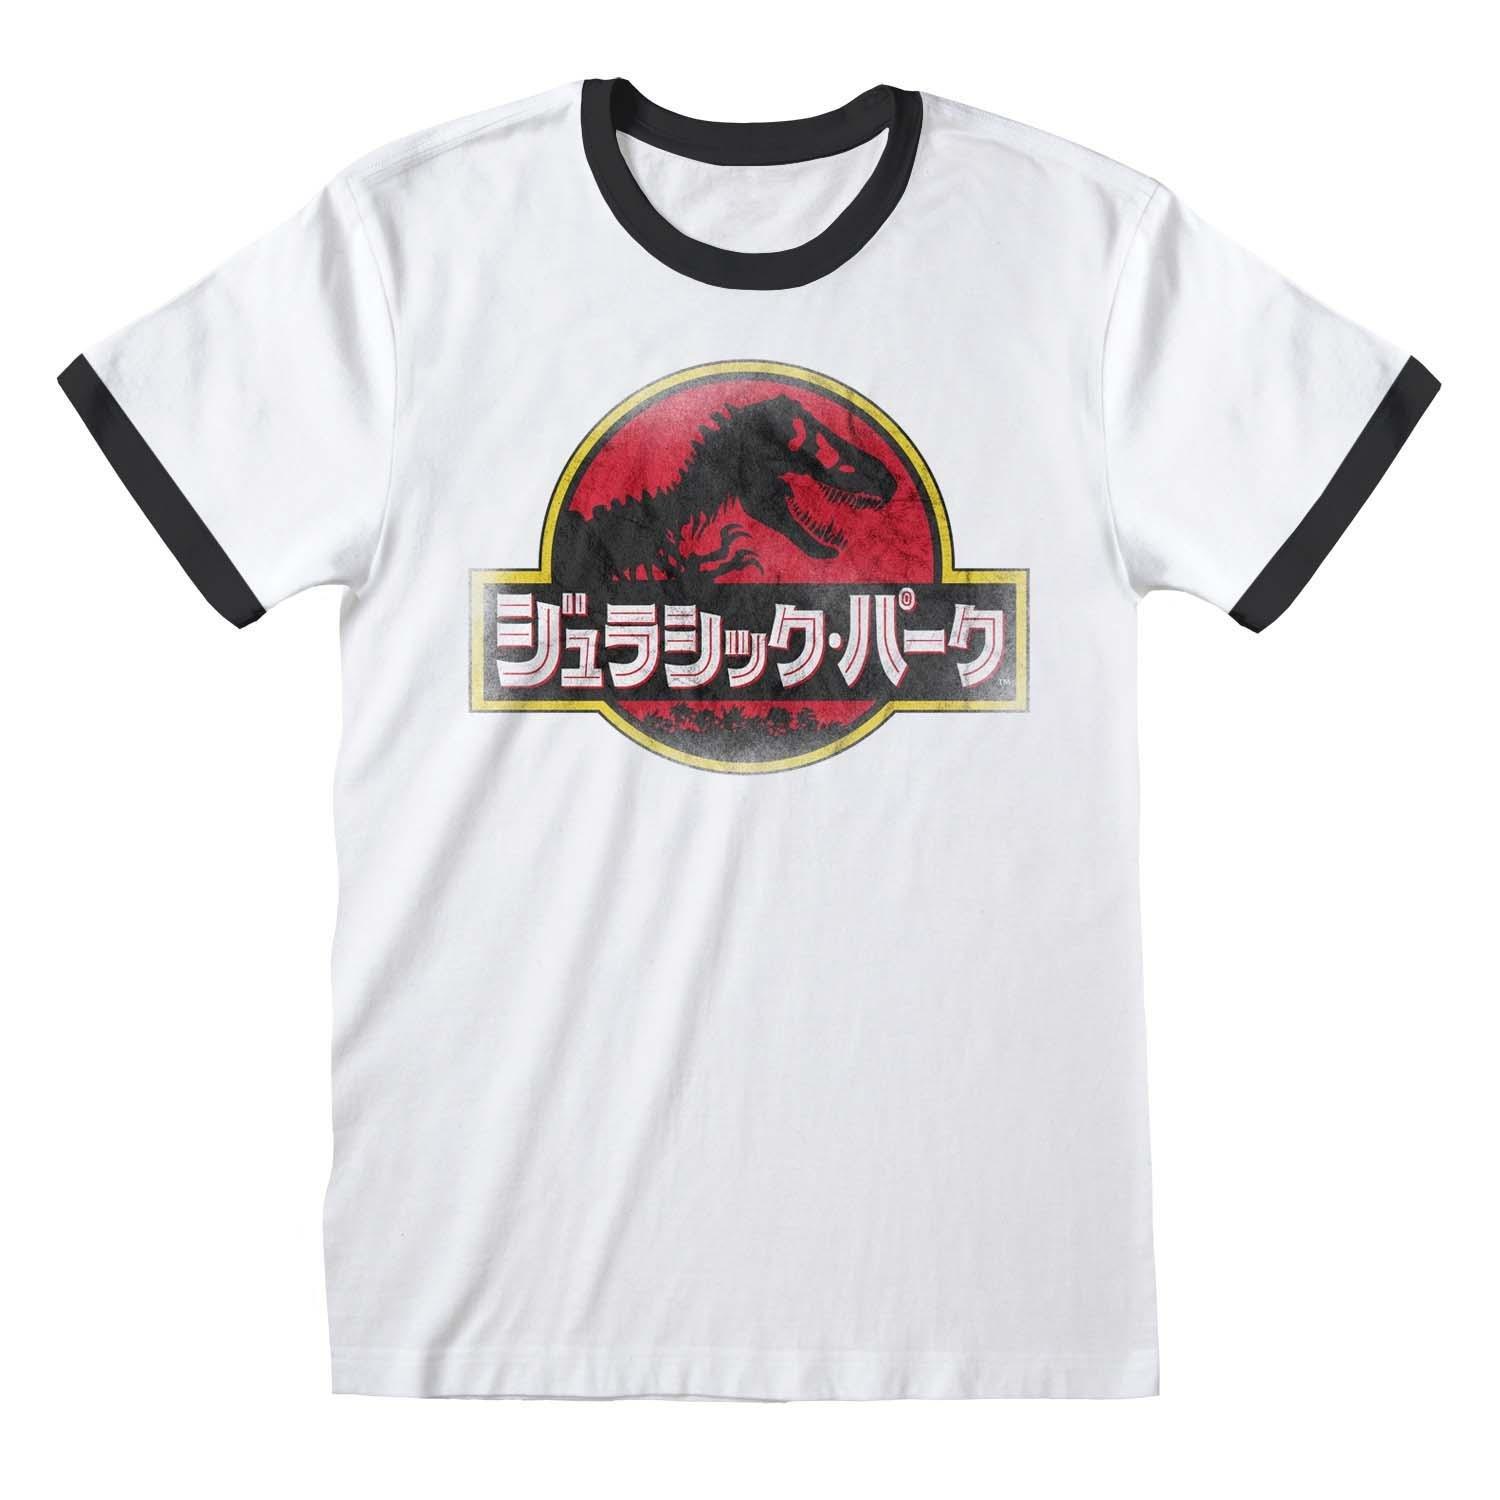 T-shirt Damen Weiss Bedruckt XXL von Jurassic Park